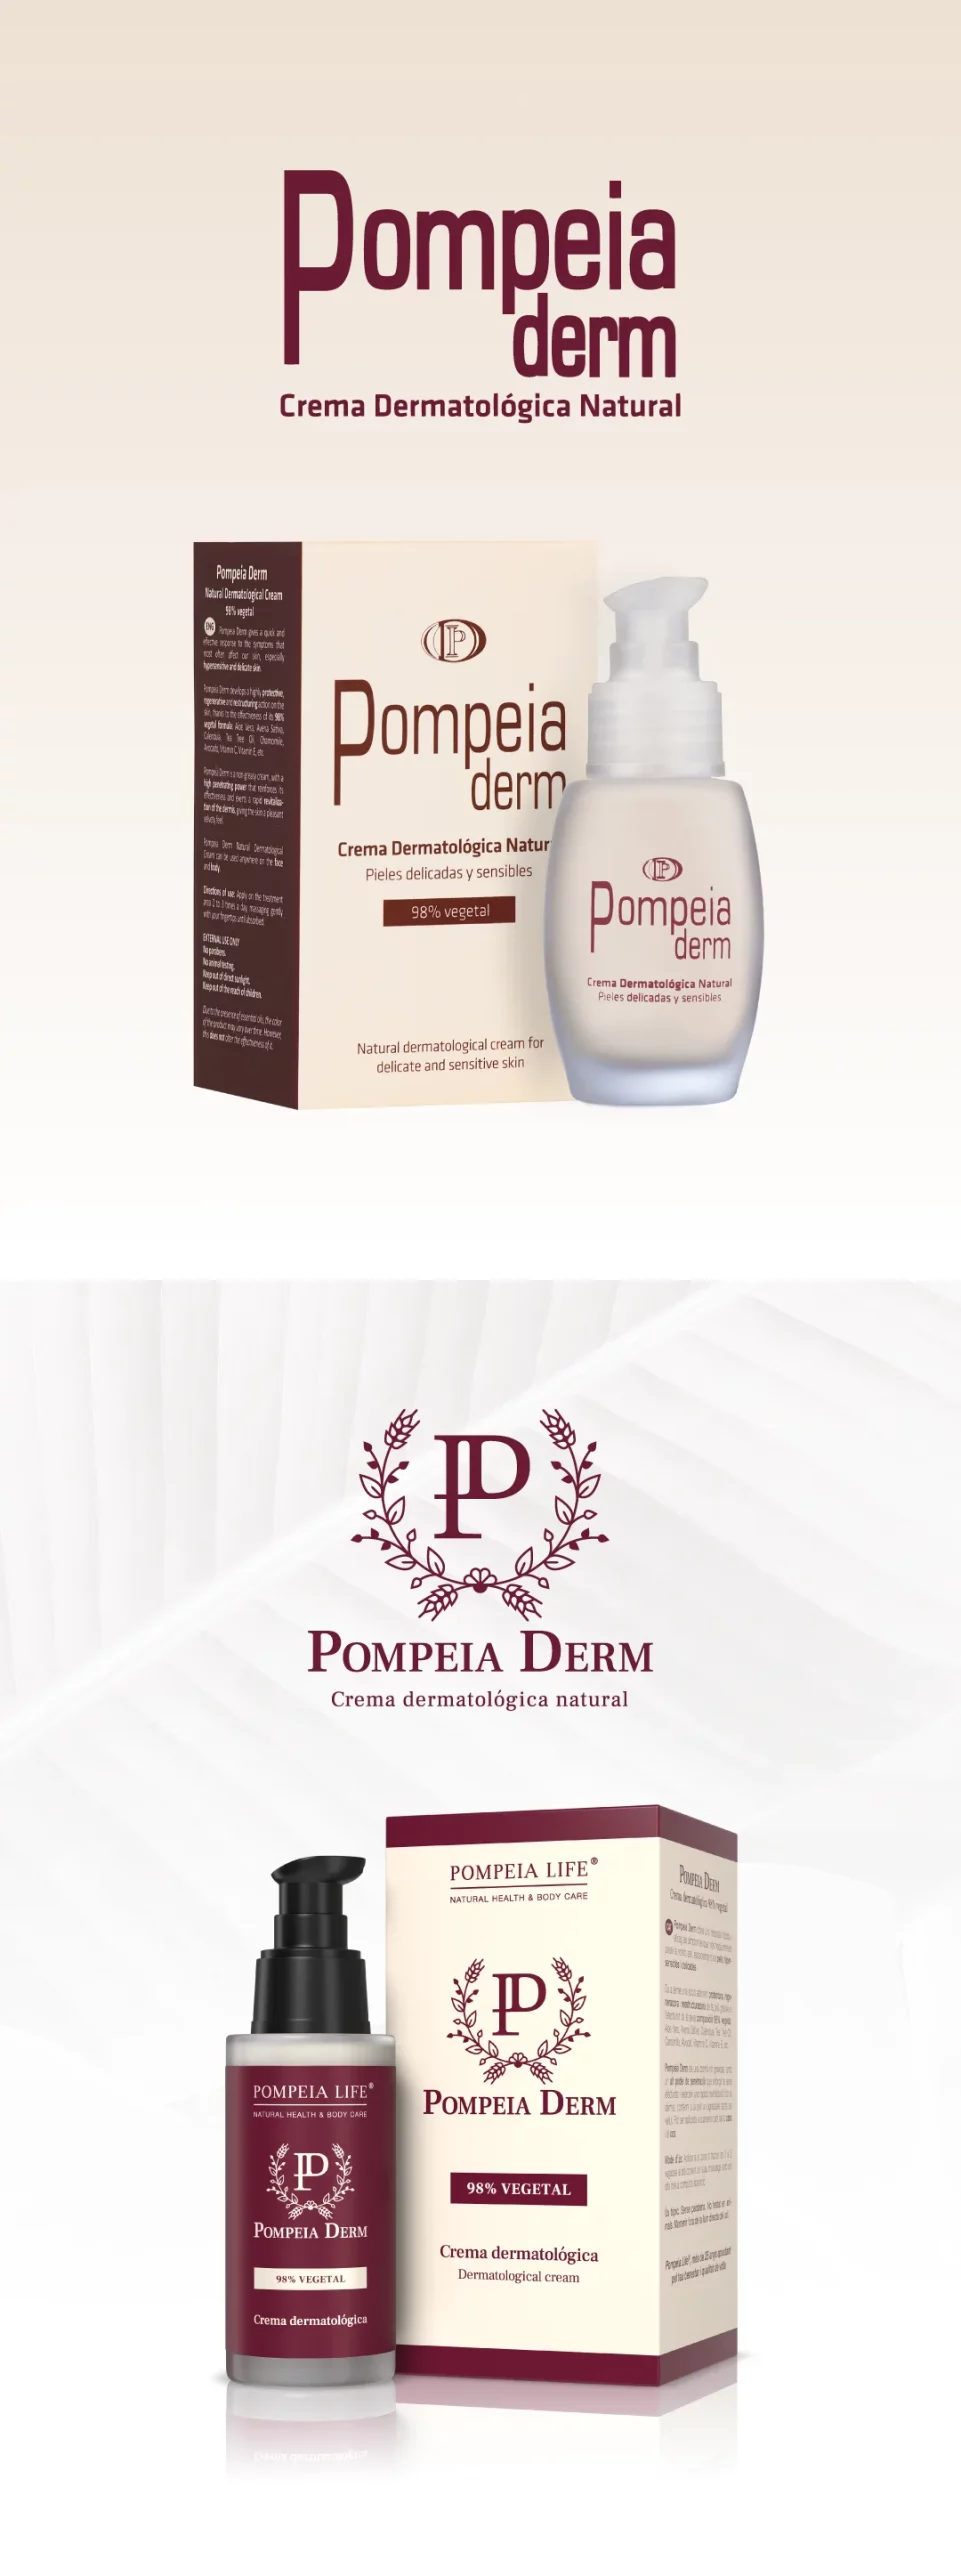 Pompeia Derm | diseño de identidad